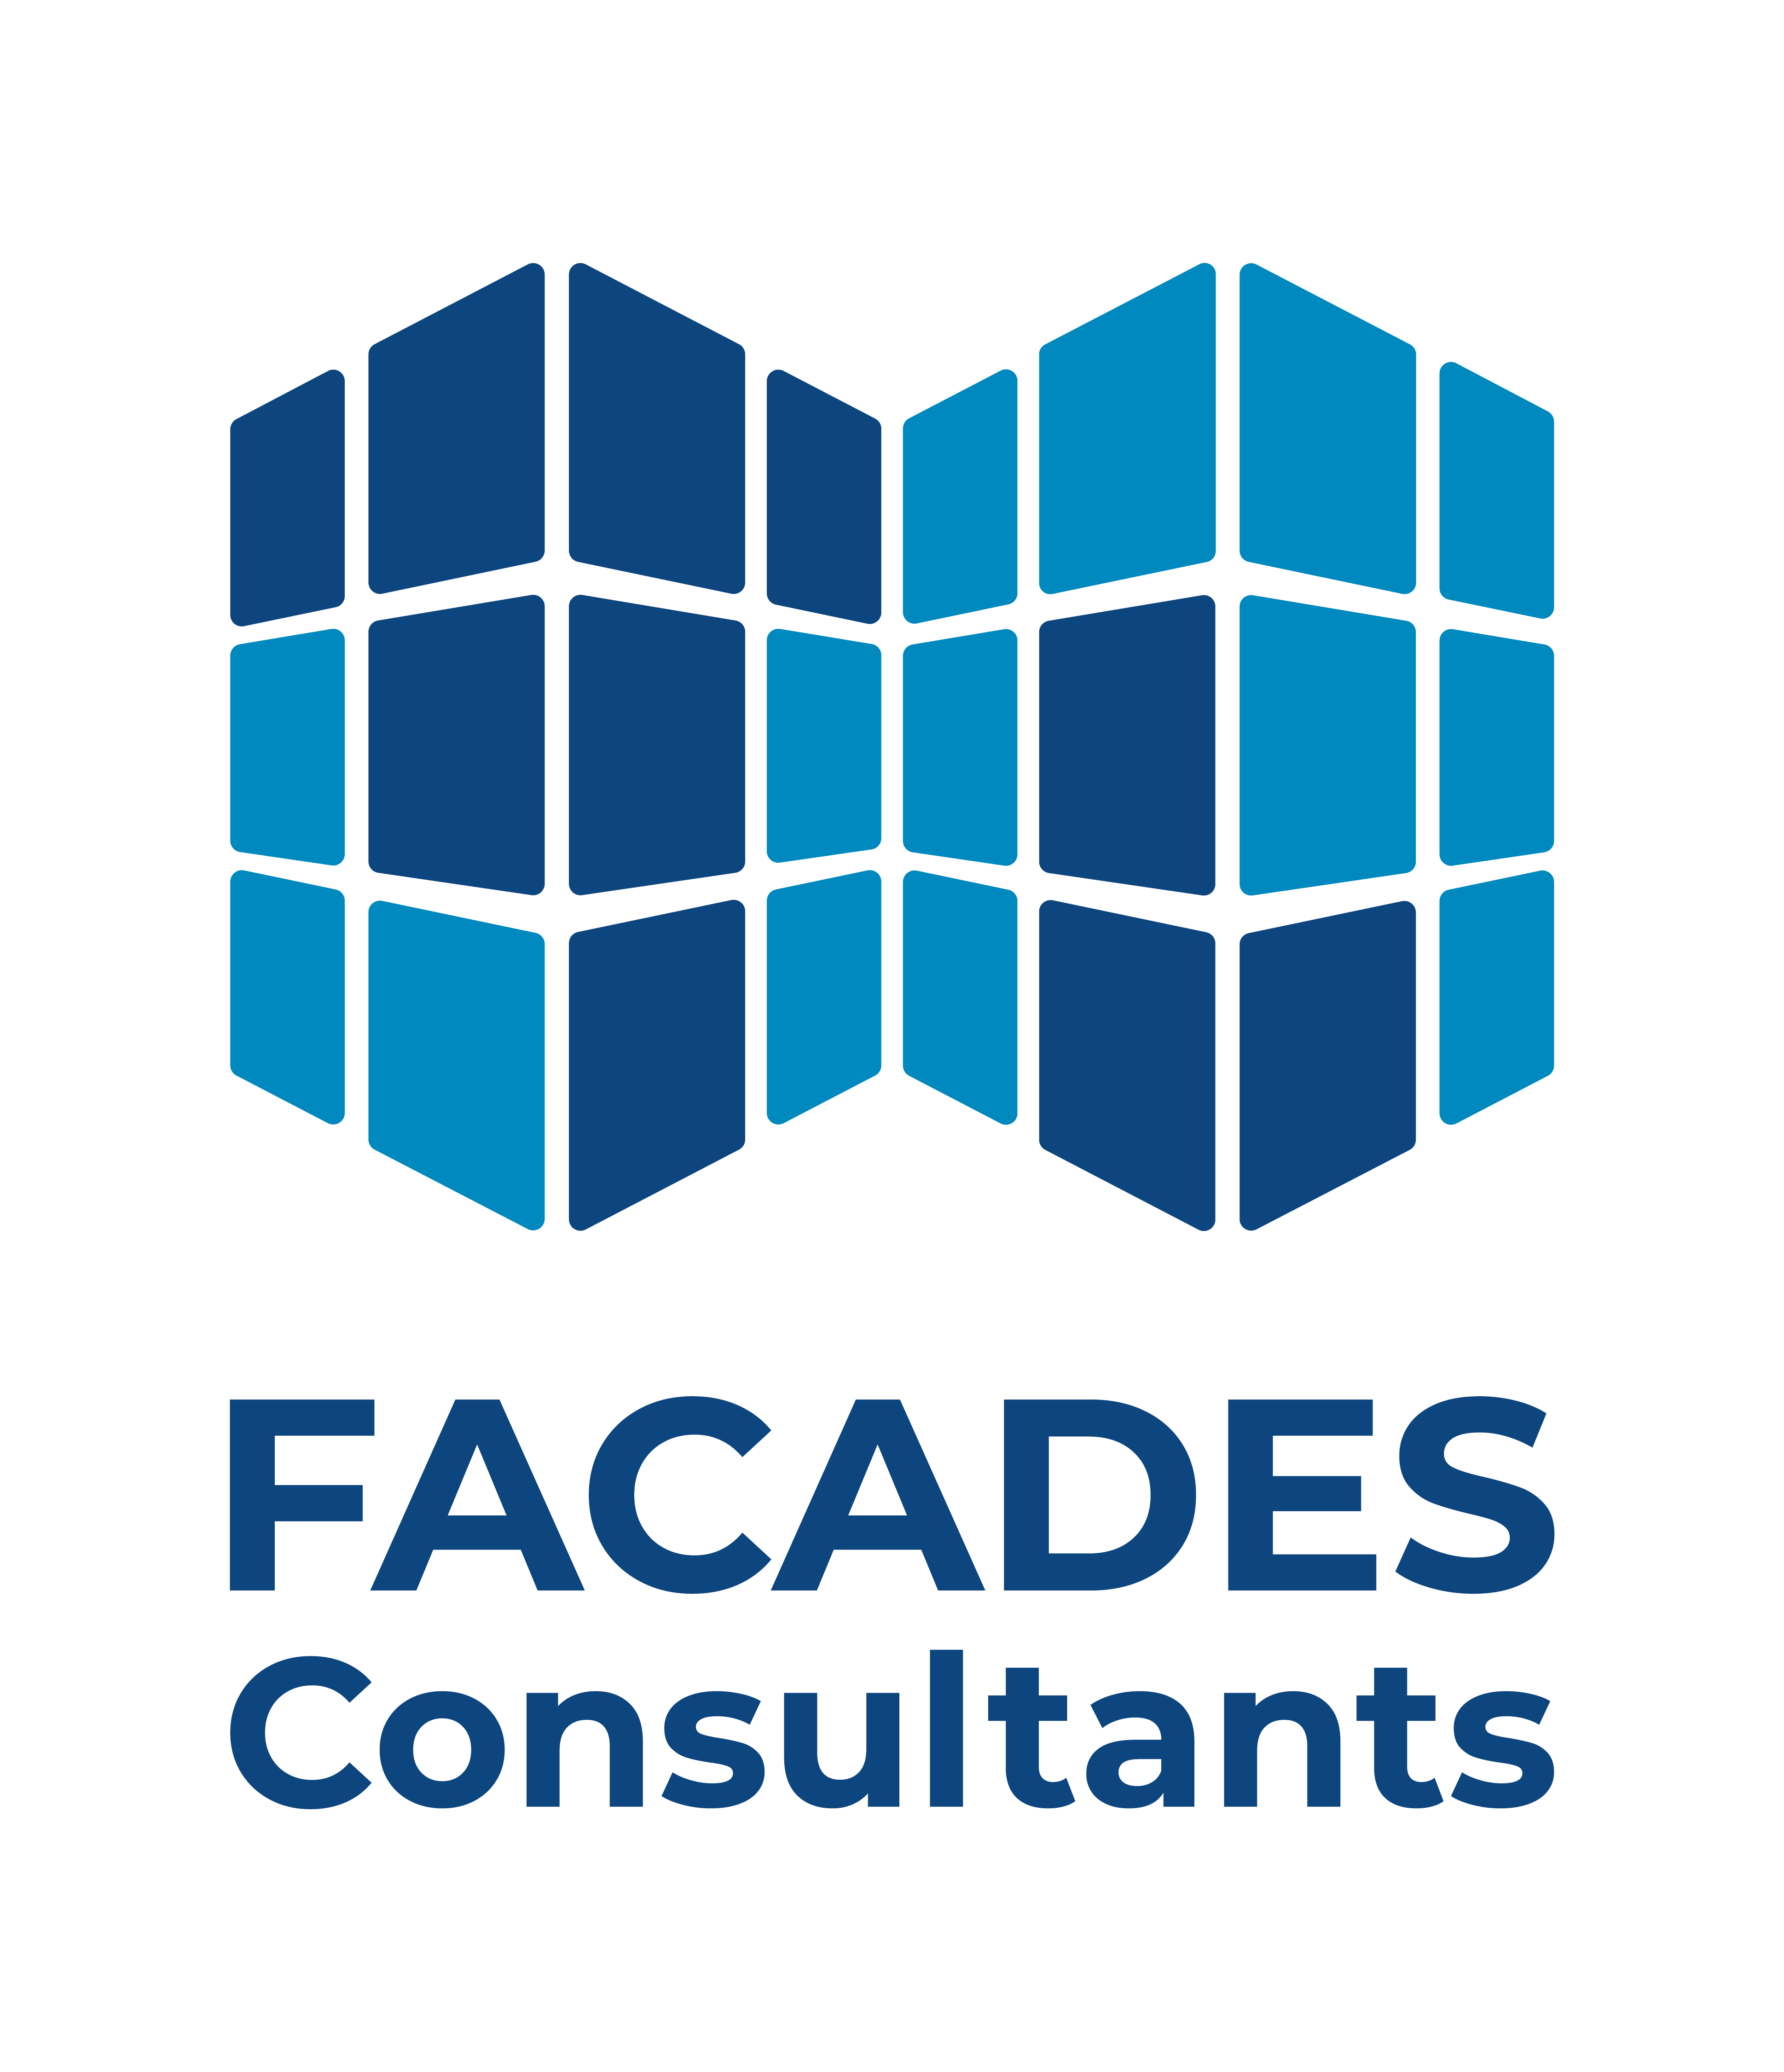 FASADES_CONSTRUCTION_LOGO-01.png